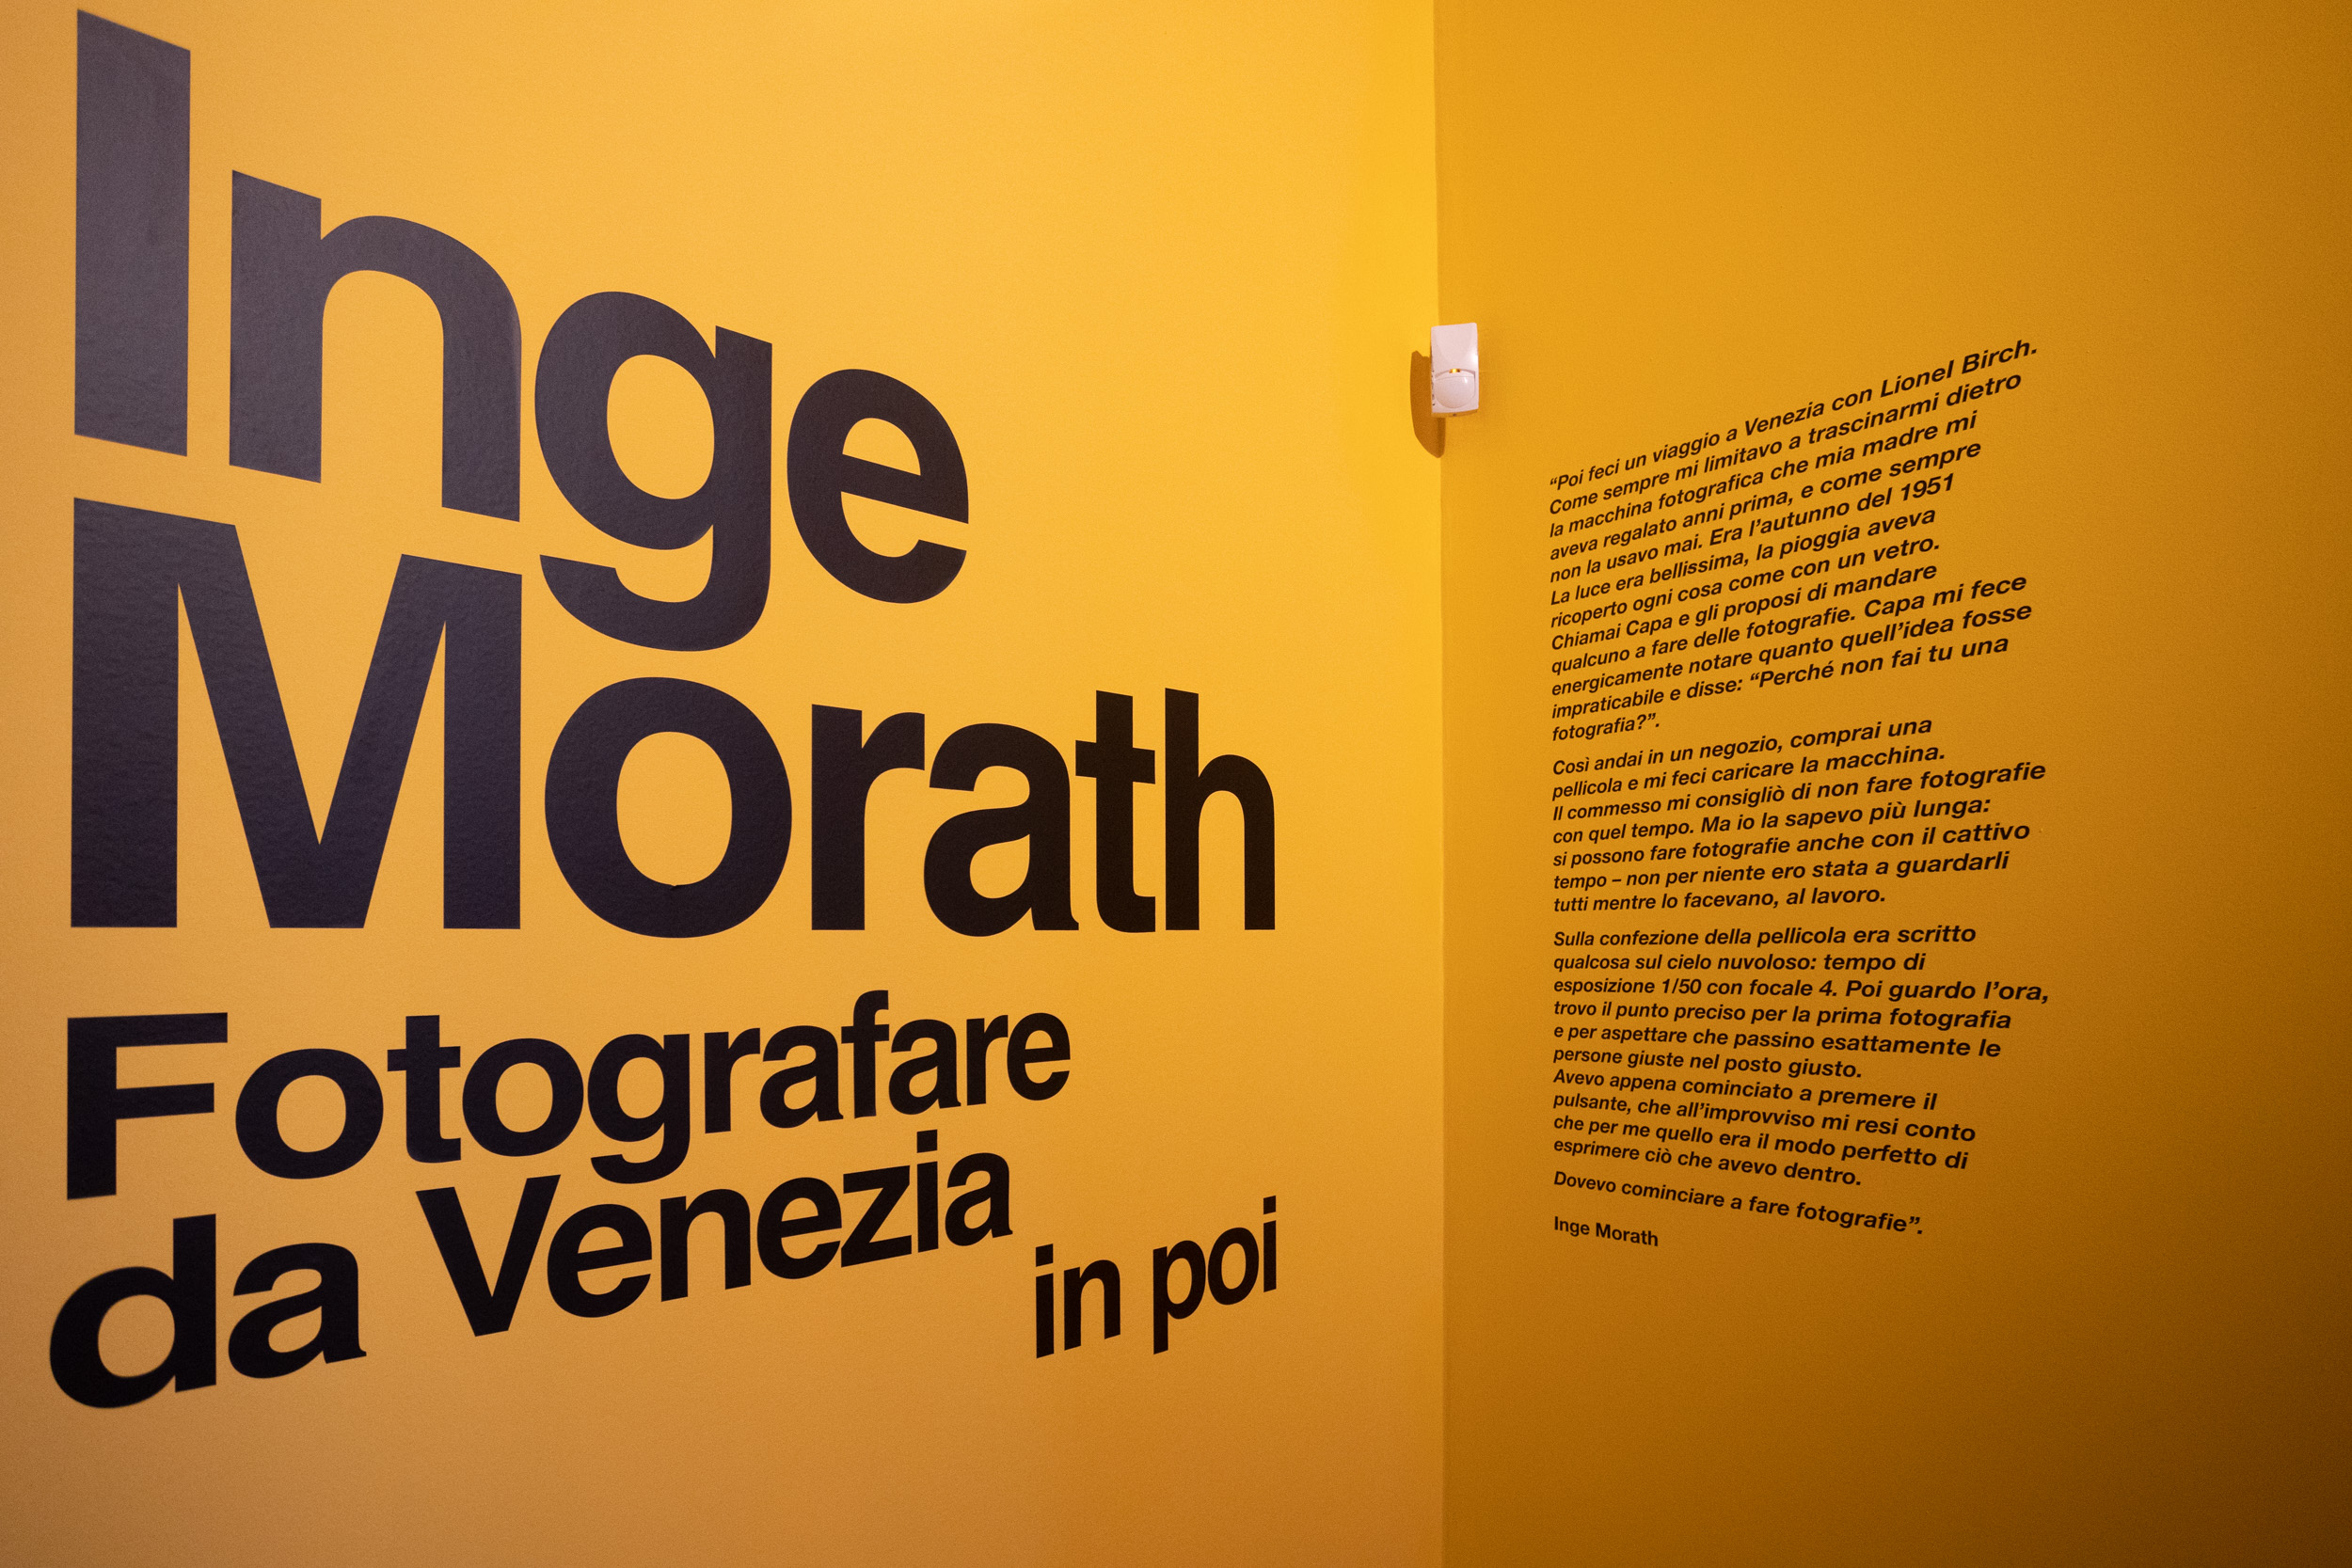 Inge Morath. Fotografare da Venezia in poi (18 gennaio - 4 giugno) a Palazzo Grimani, Venezia